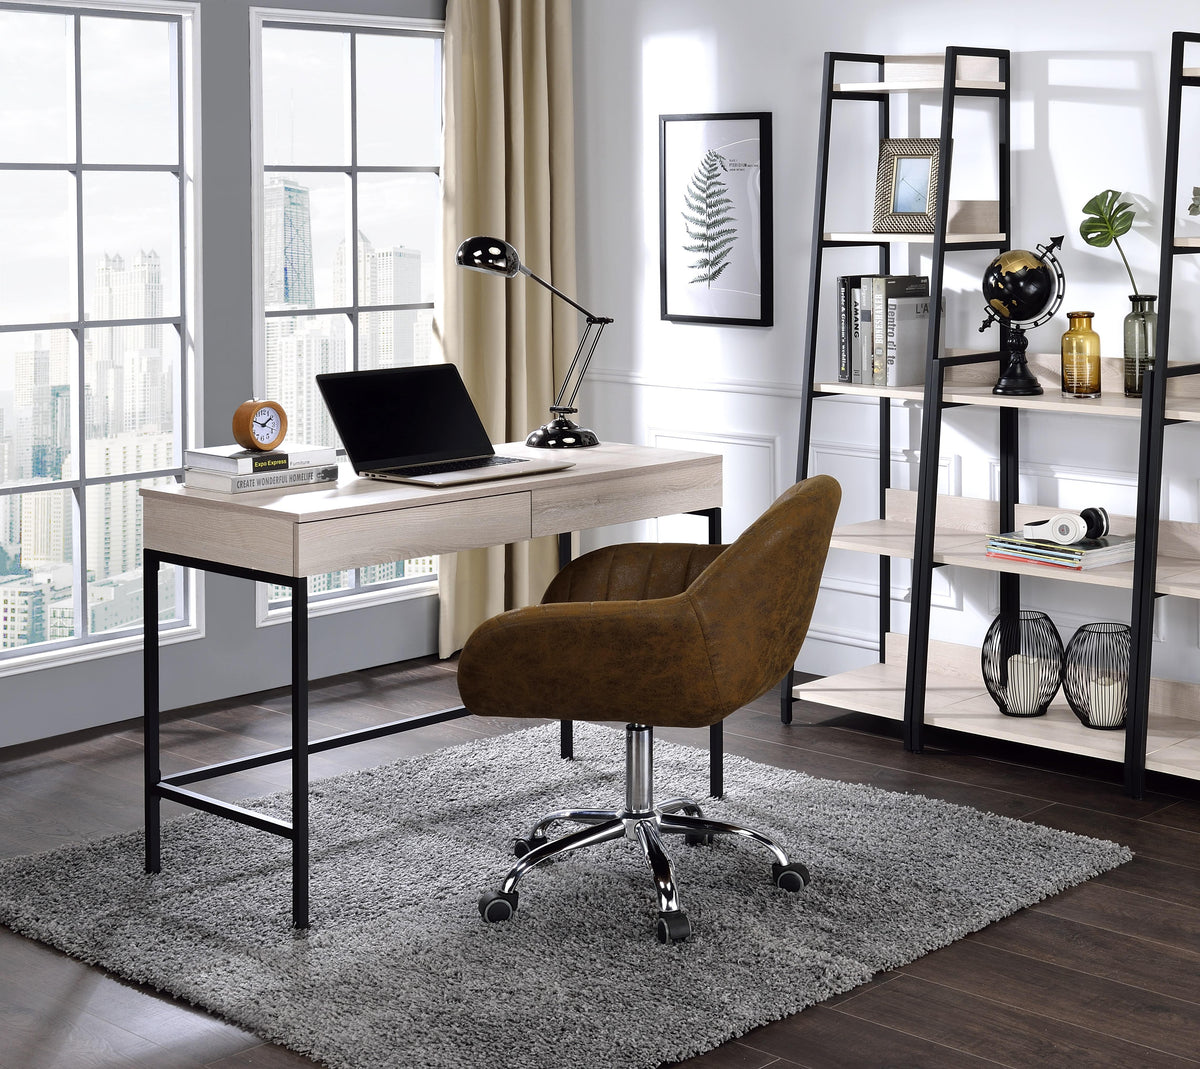 Wendral Natural & Black Desk  Half Price Furniture